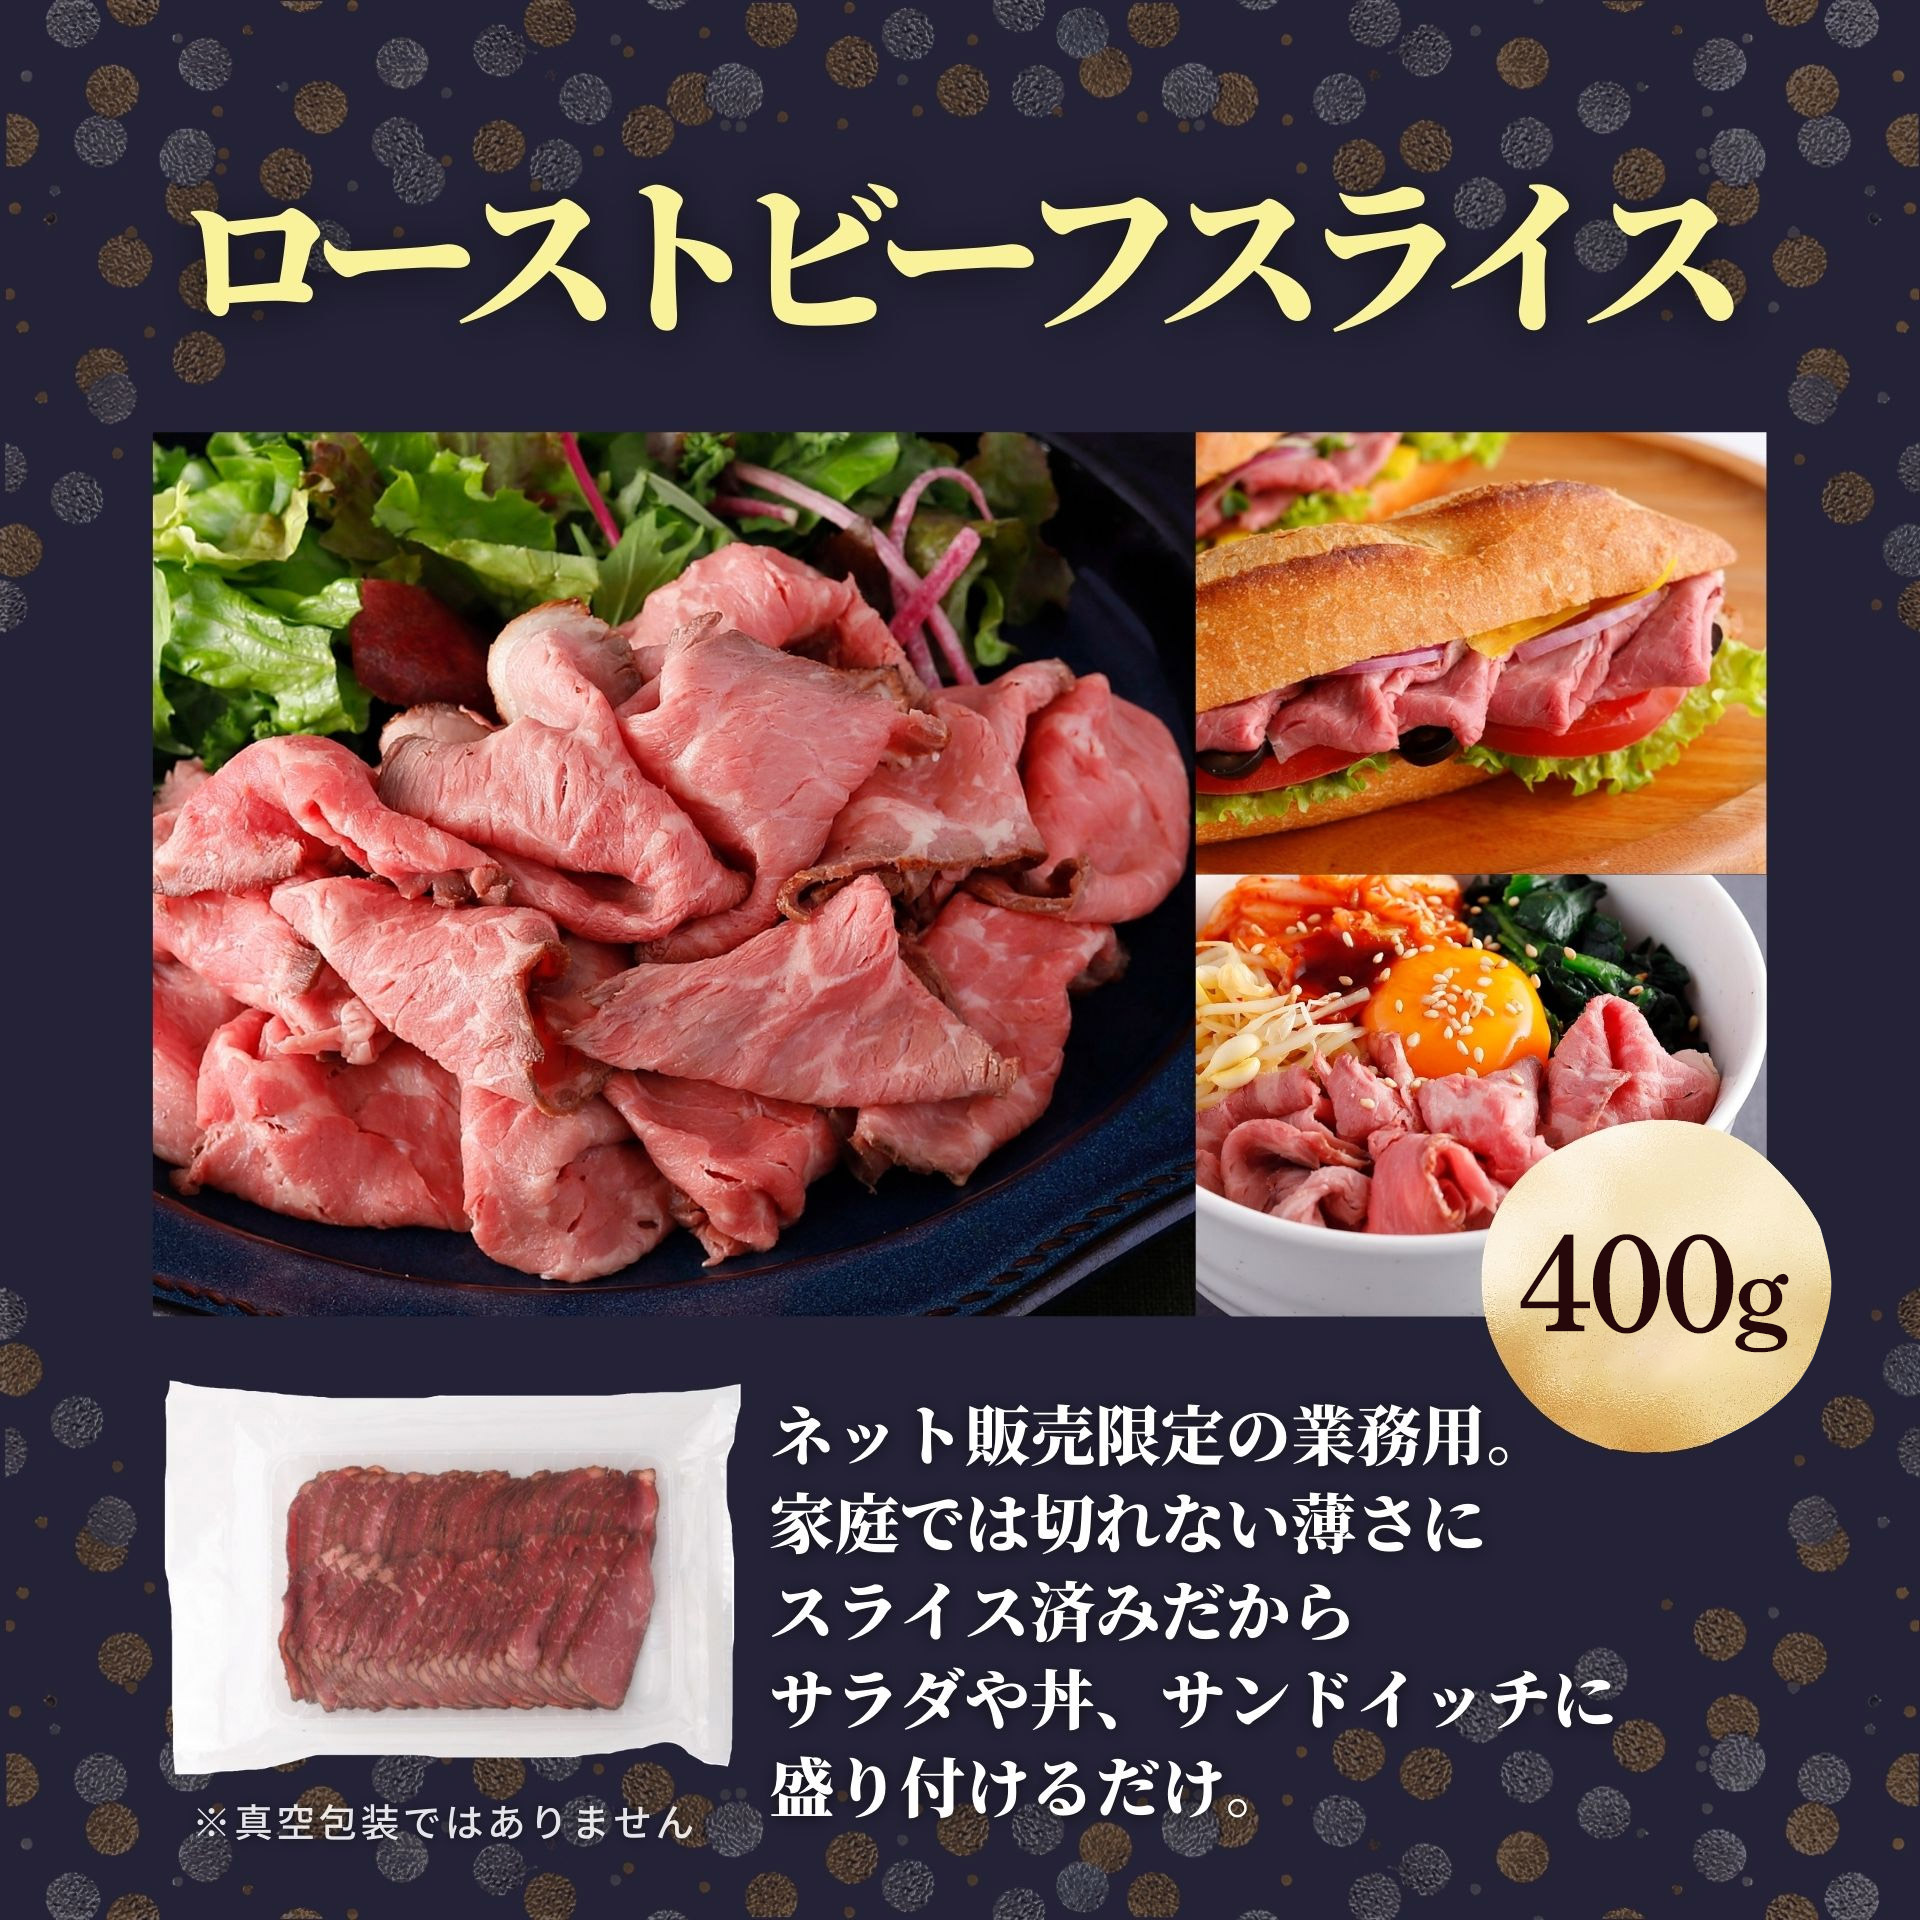 日本全国 送料無料日本全国 送料無料((冷凍食品 よりどり10品以上で送料無料))味の素 洋食亭ジューシーハンバーグ 165g 肉惣菜、肉料理 